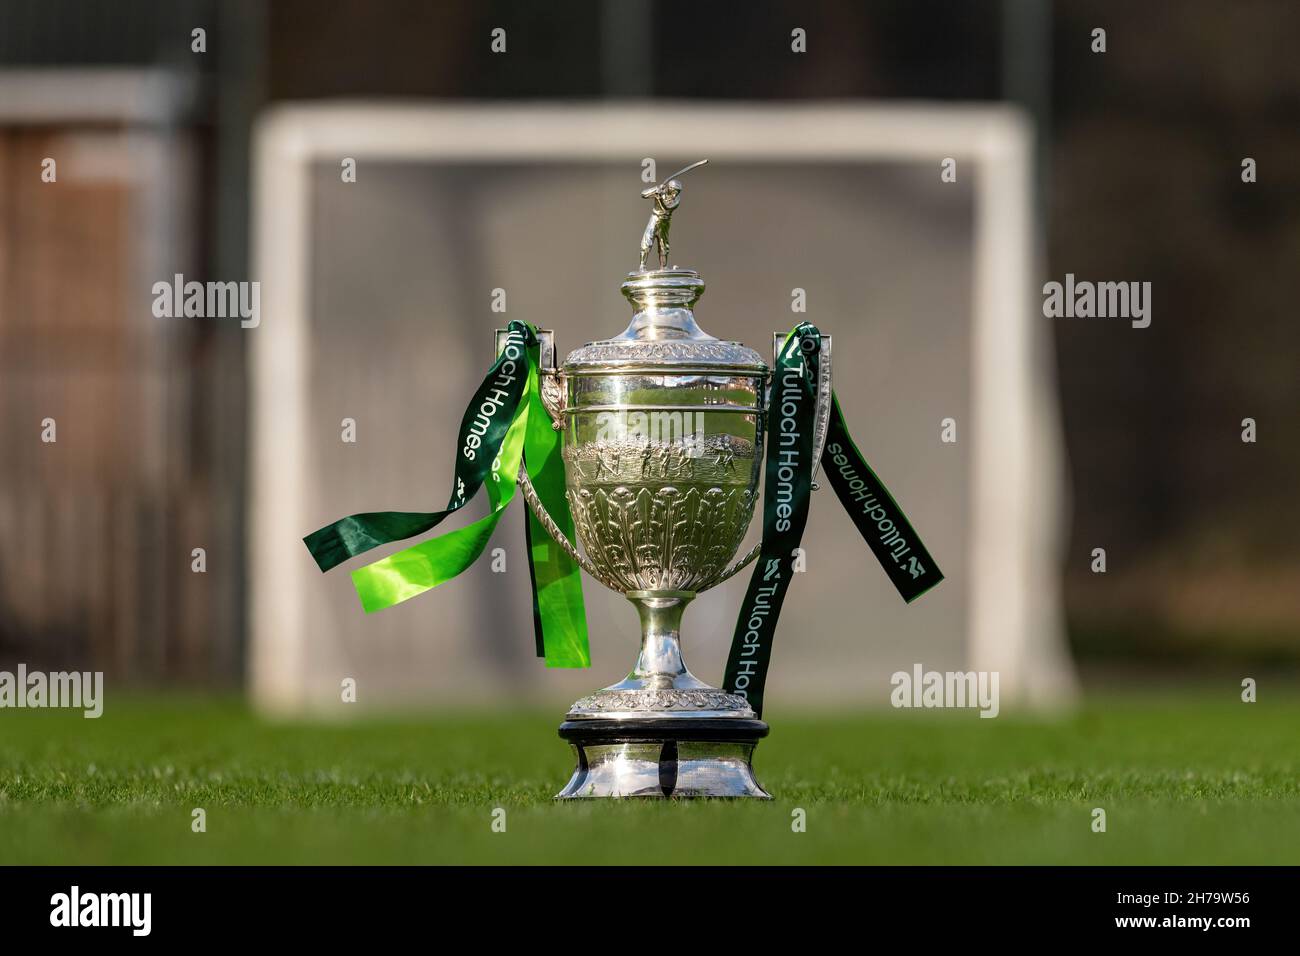 El trofeo más importante en la espinosa, la Copa Camanachd, representada en el campo en el Dell, Kingussie, con las cintas de los patrocinadores mostrando Tulloch Homes. Foto de stock